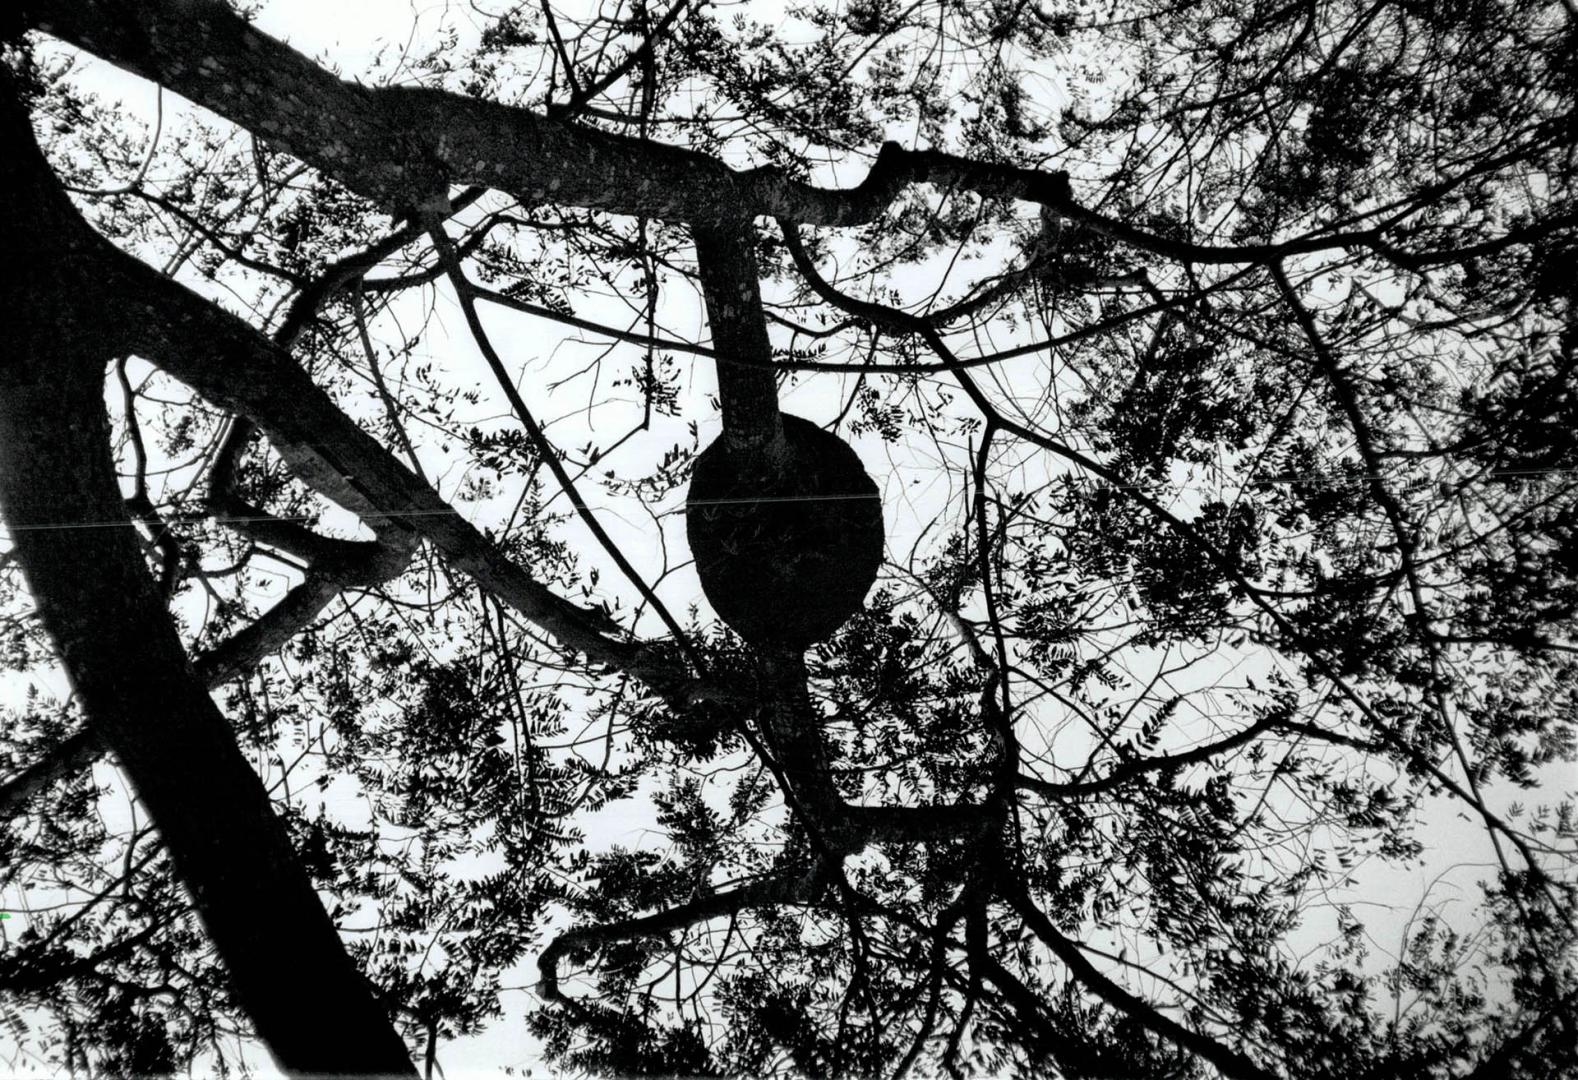 Treetop Hideaway: Termites nest in trees, away from enemies